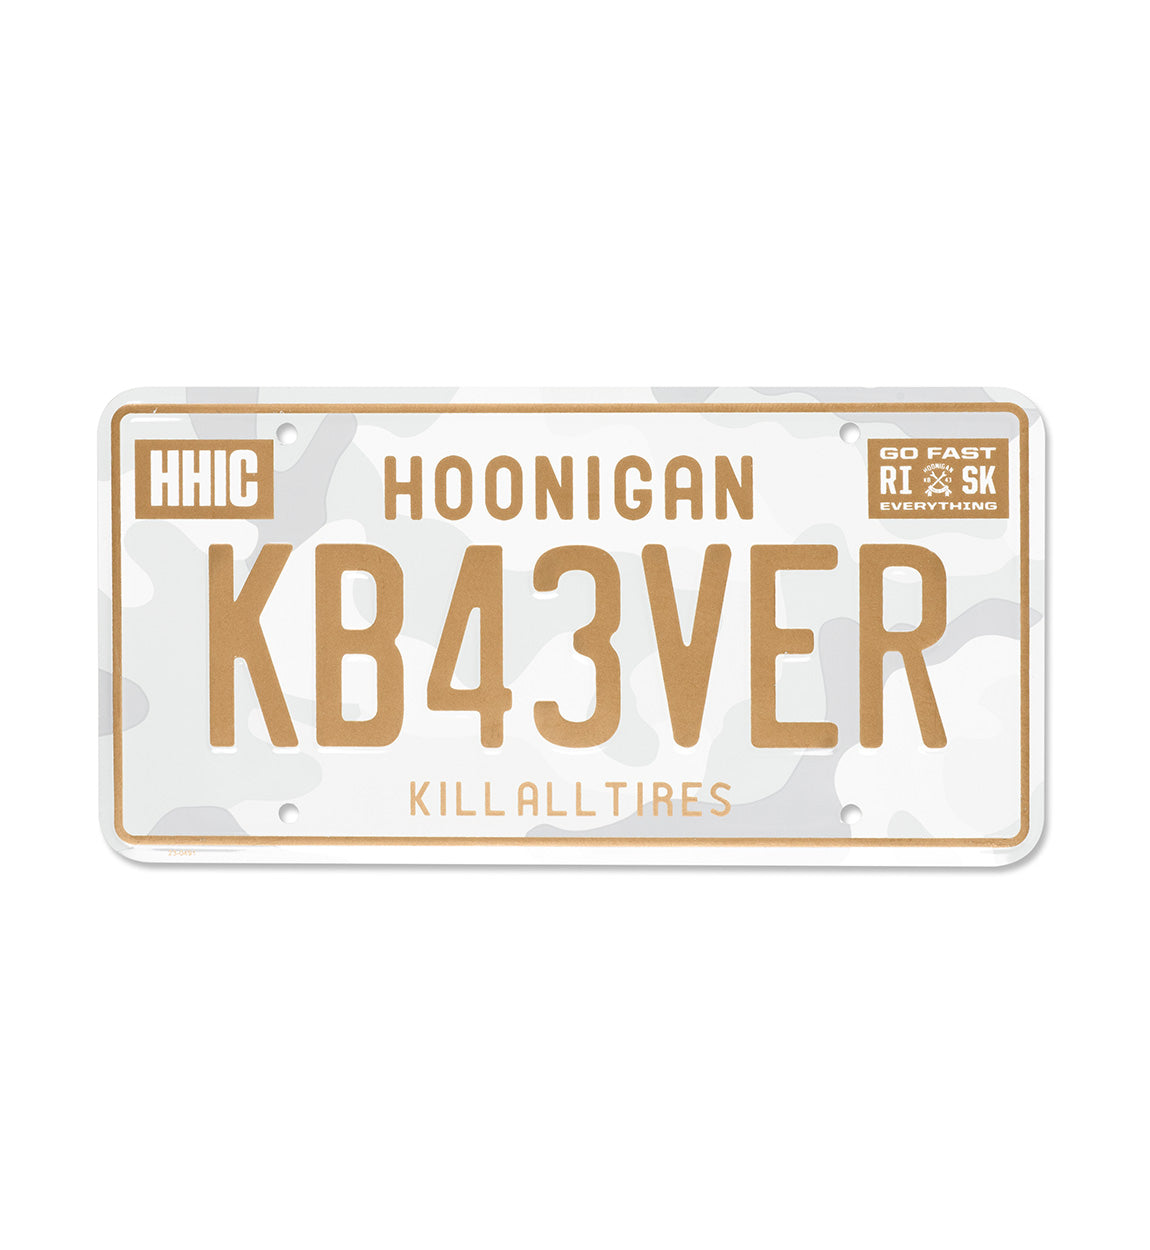 Hoonigan KB43VER Snow Camo Metal License Plate